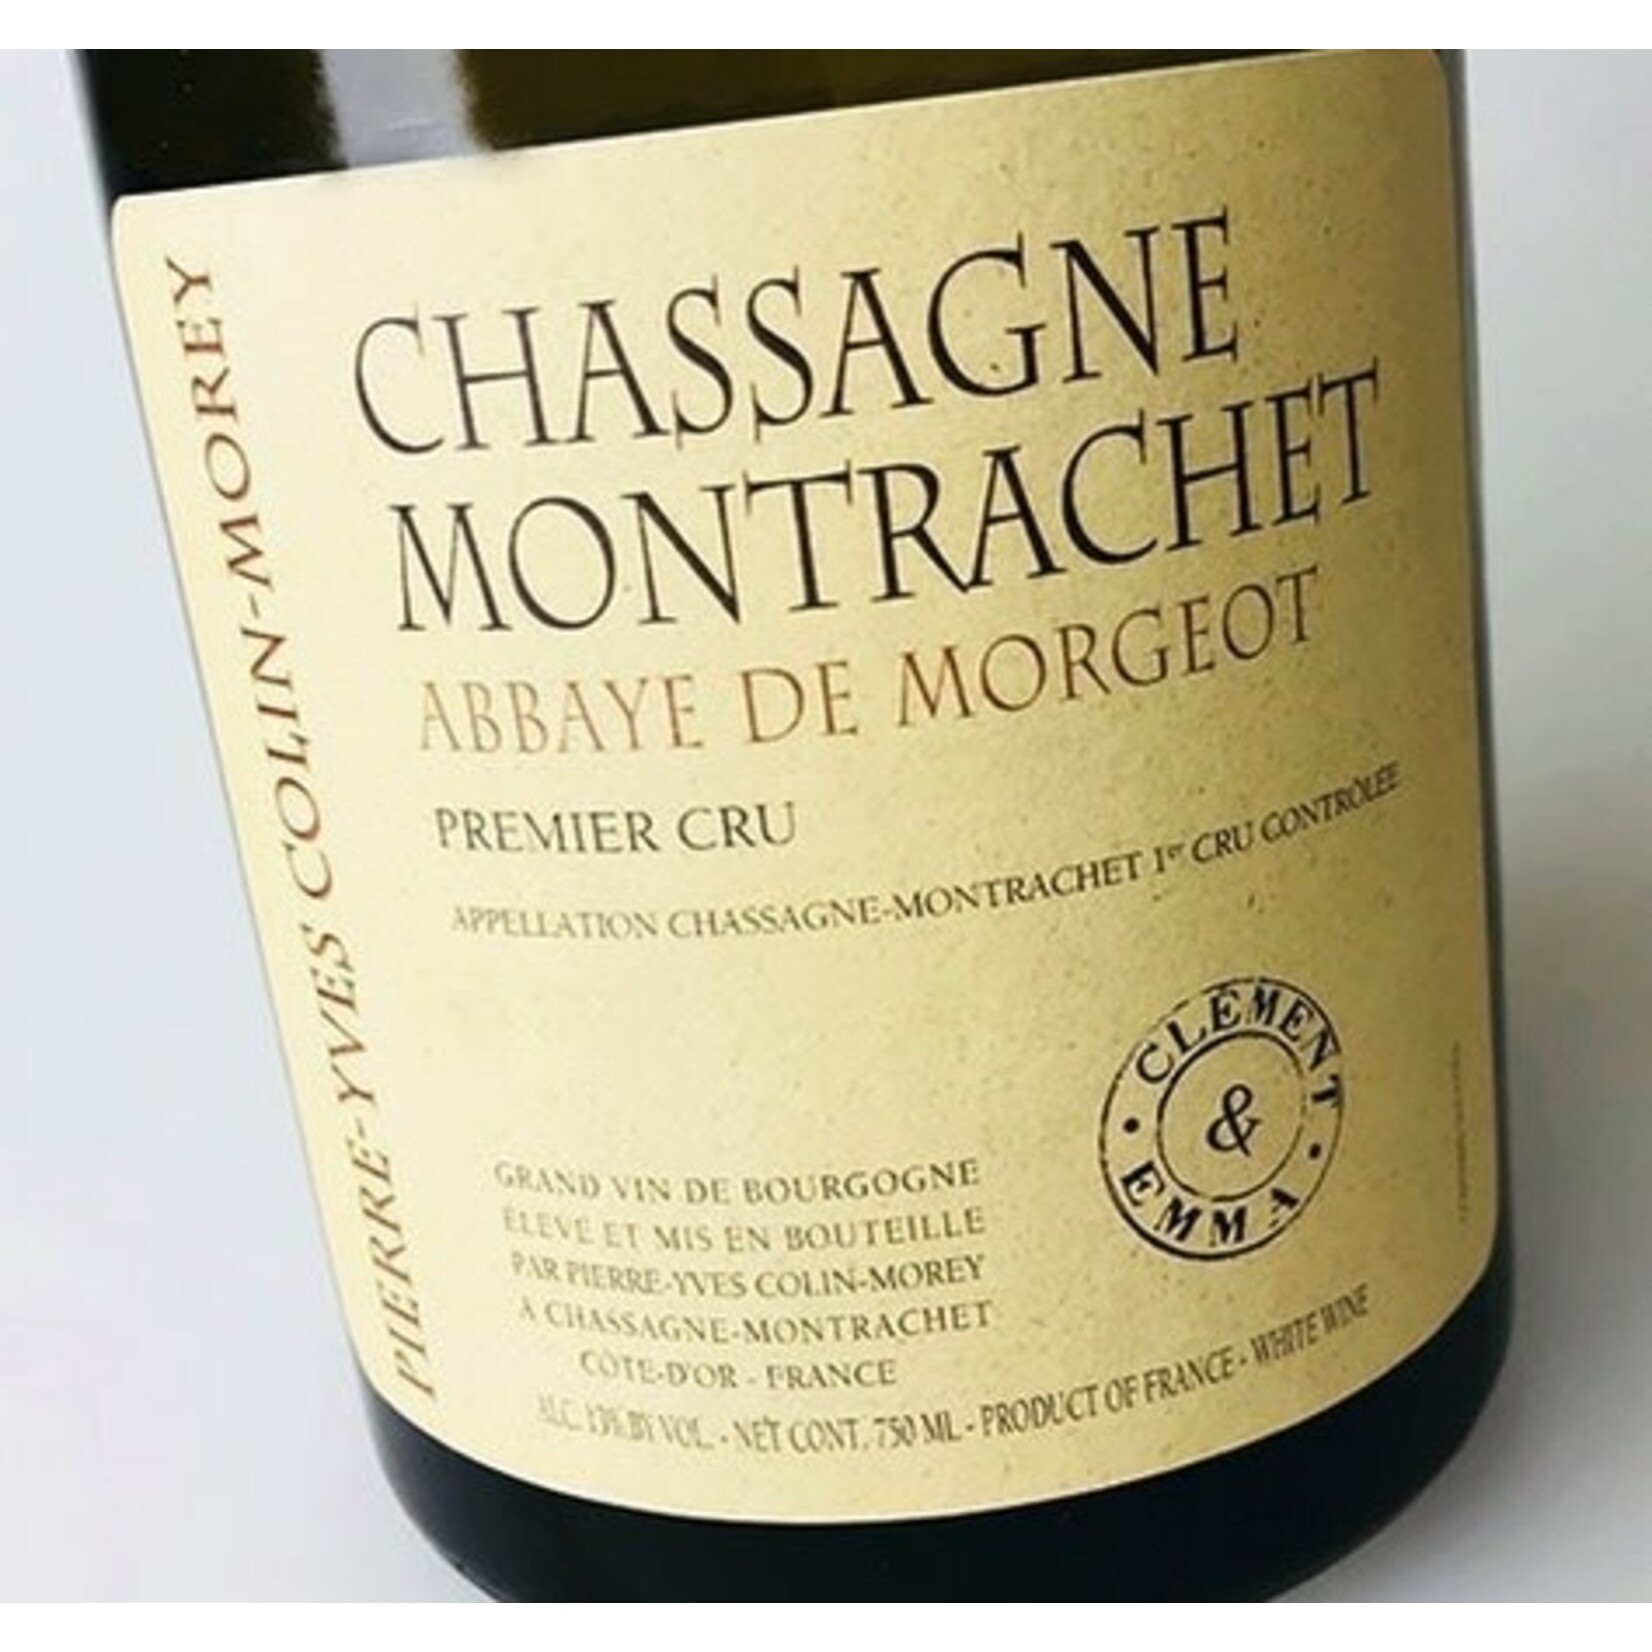 Wine Pierre-Yves Colin-Morey Chassagne Montrachet Abbaye de Morgeot Premier Cru “Clement & Emma” 2020